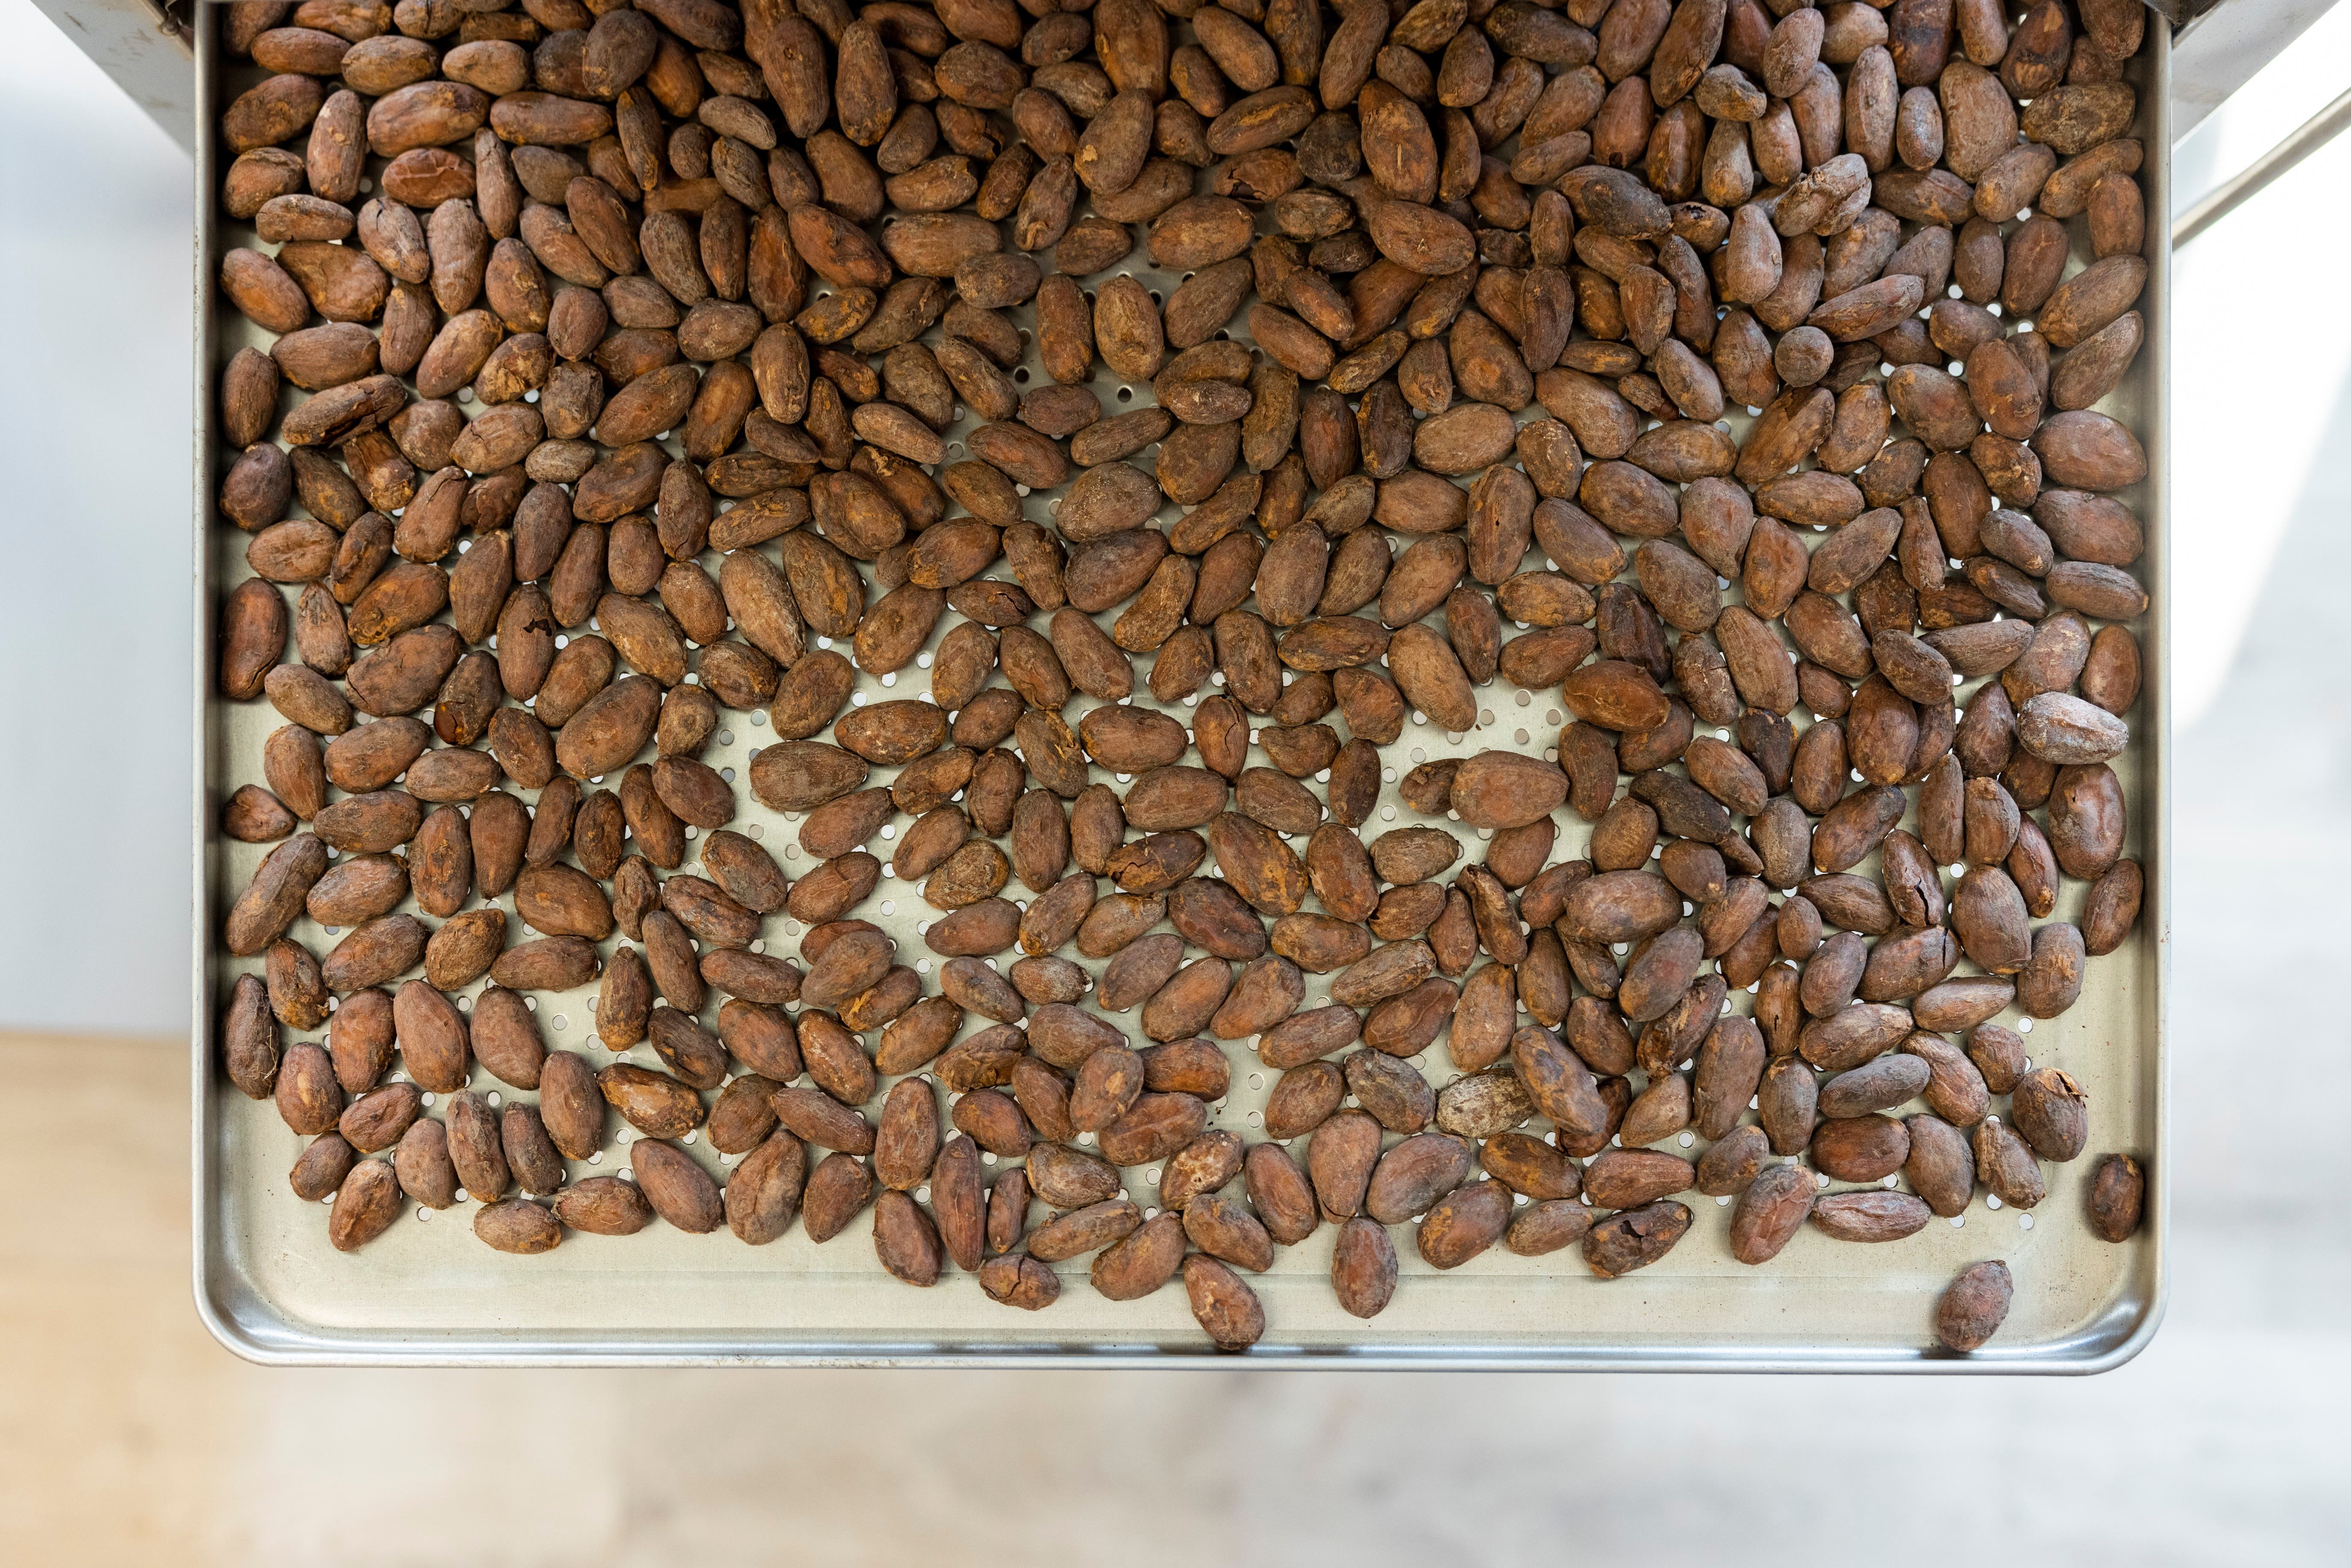 Die Kakaobohnen importiert Kürzi aus den Herkunftsländern und röstet sie dann selbst in einem Gastrobackofen in ihrer Manufaktur.